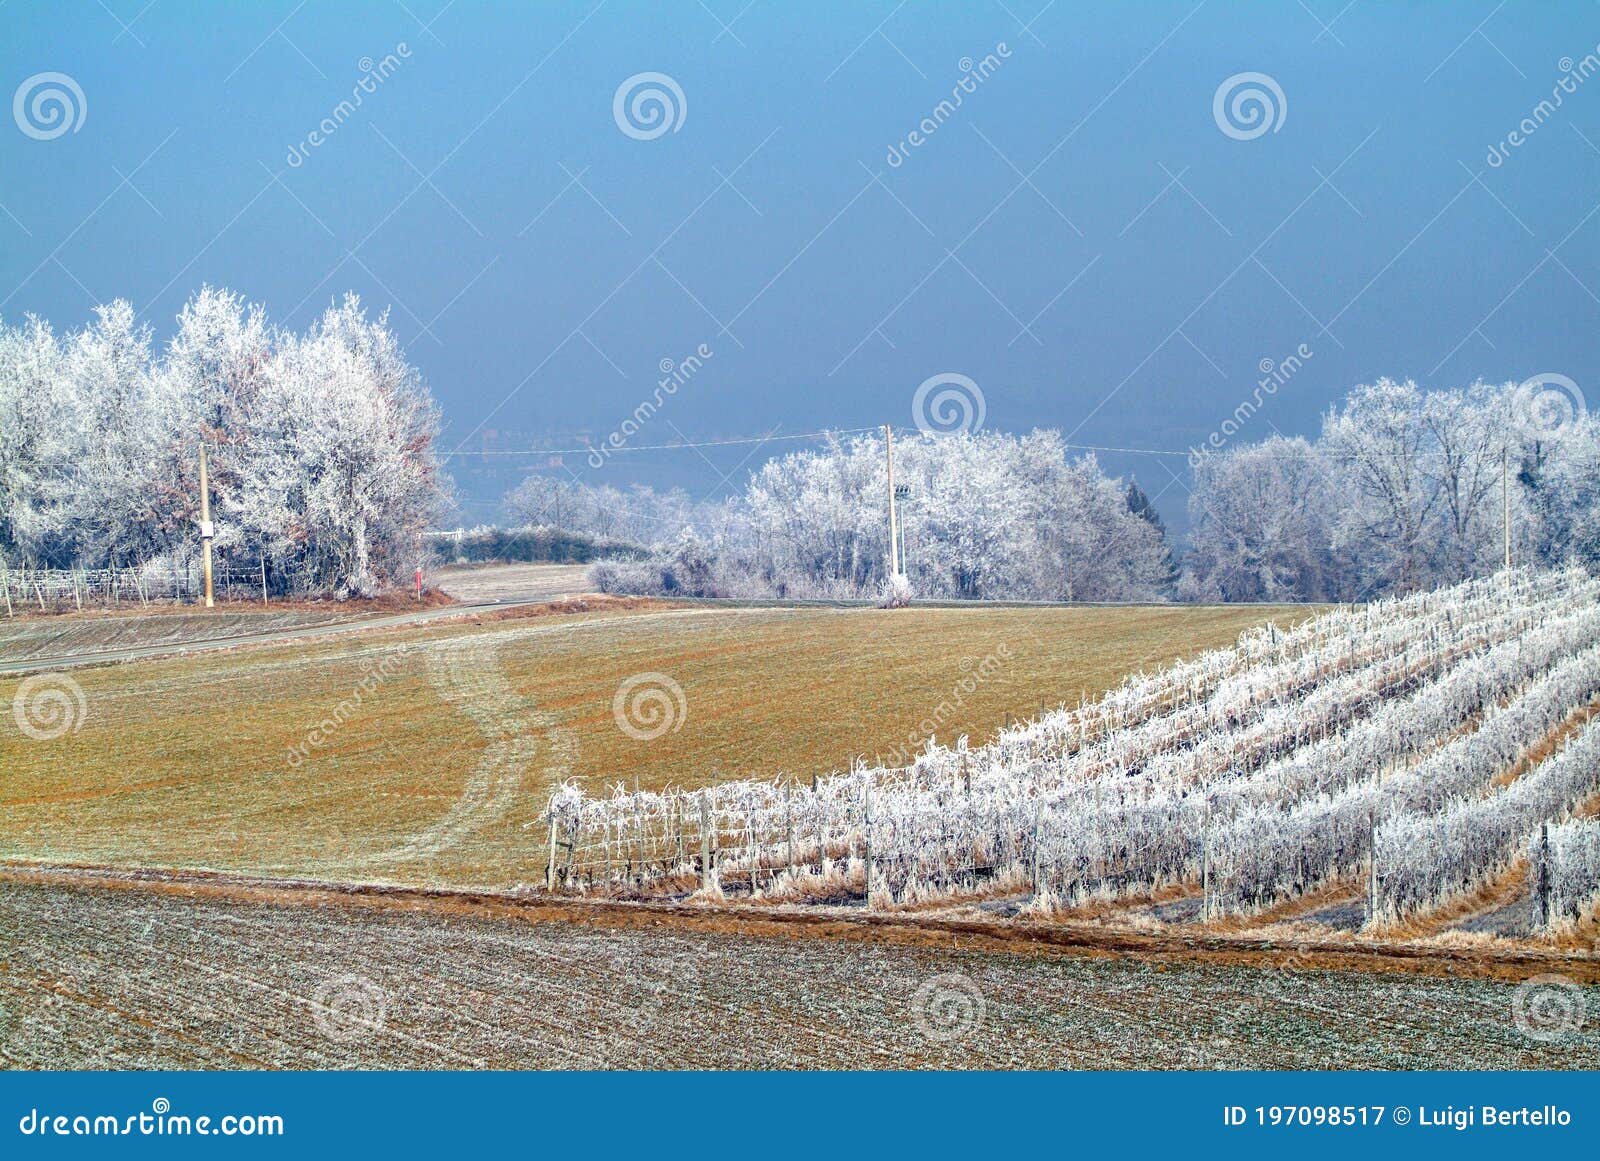 frozen landscape in piedmont during winter